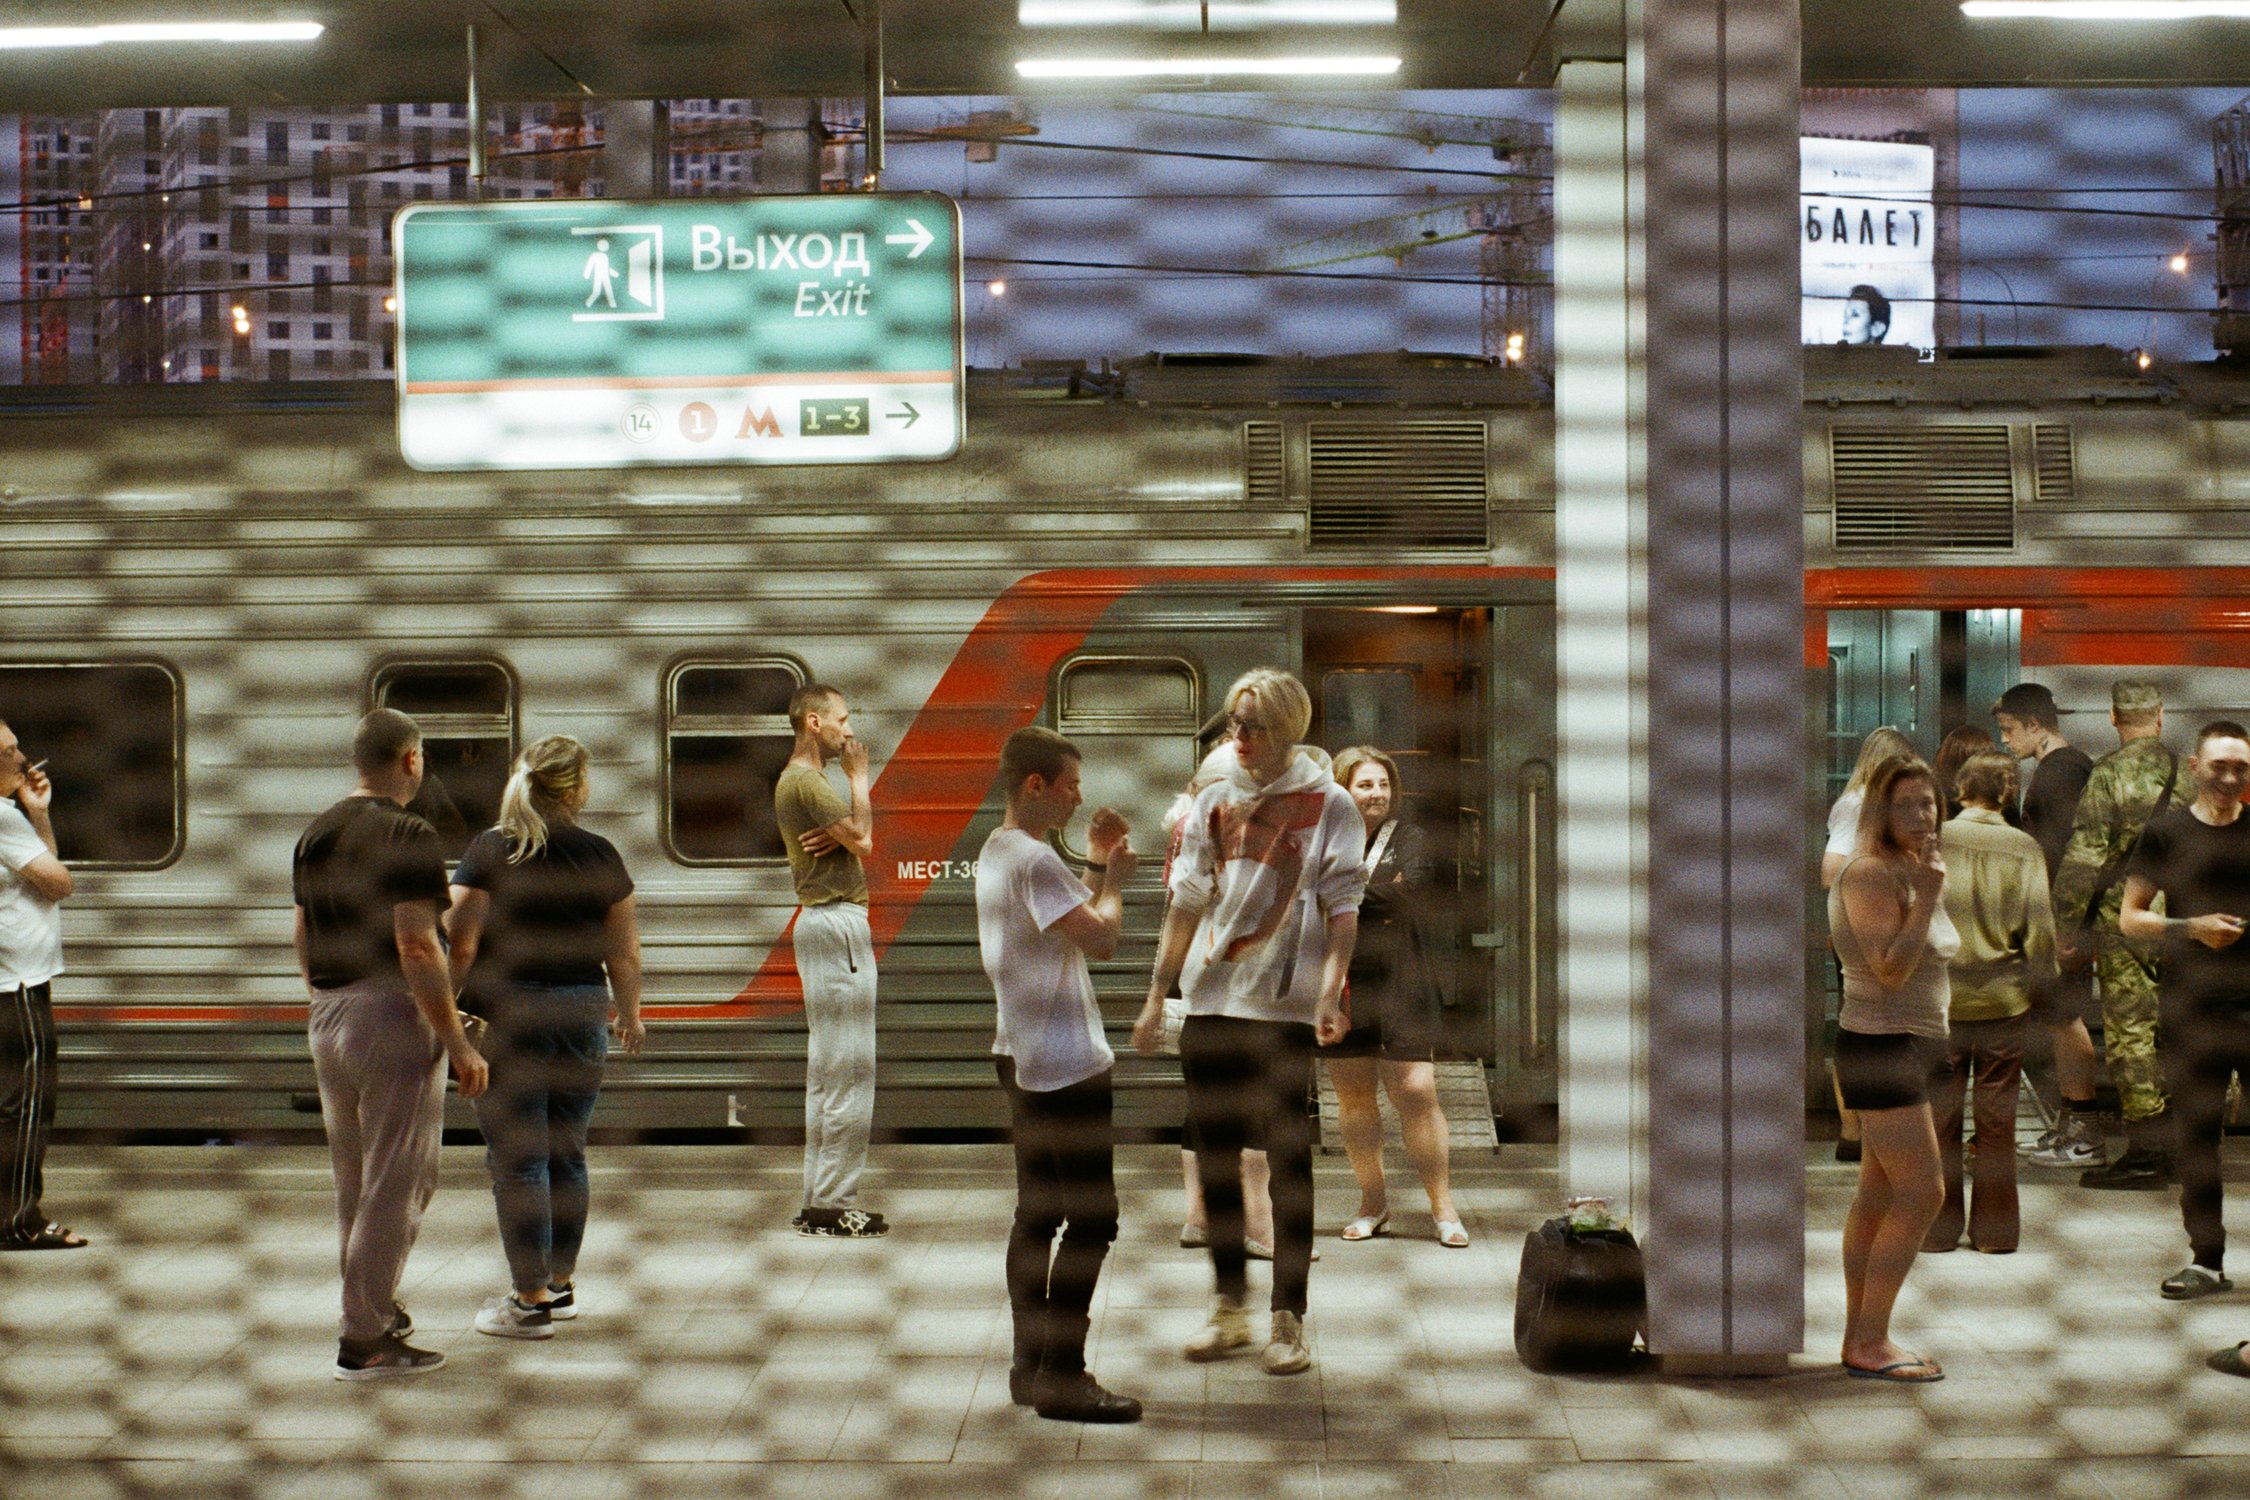 Выход. Балет. Восточный вокзал, Москва